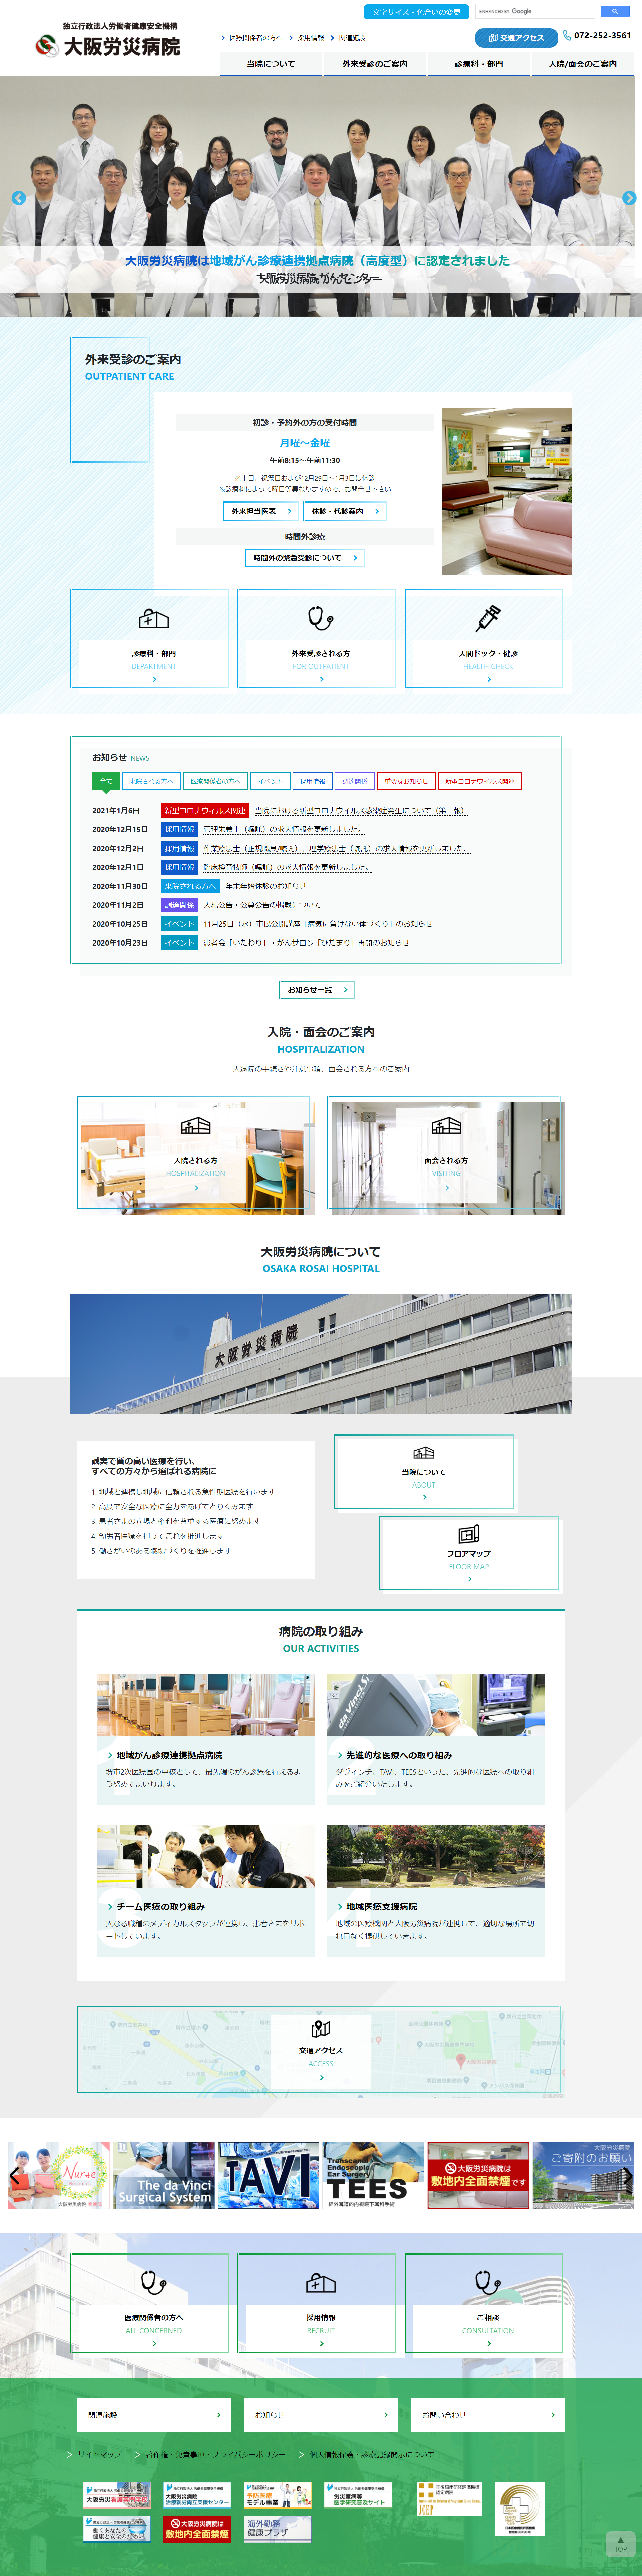 2020年2月作成「大阪労災病院」病院サイト